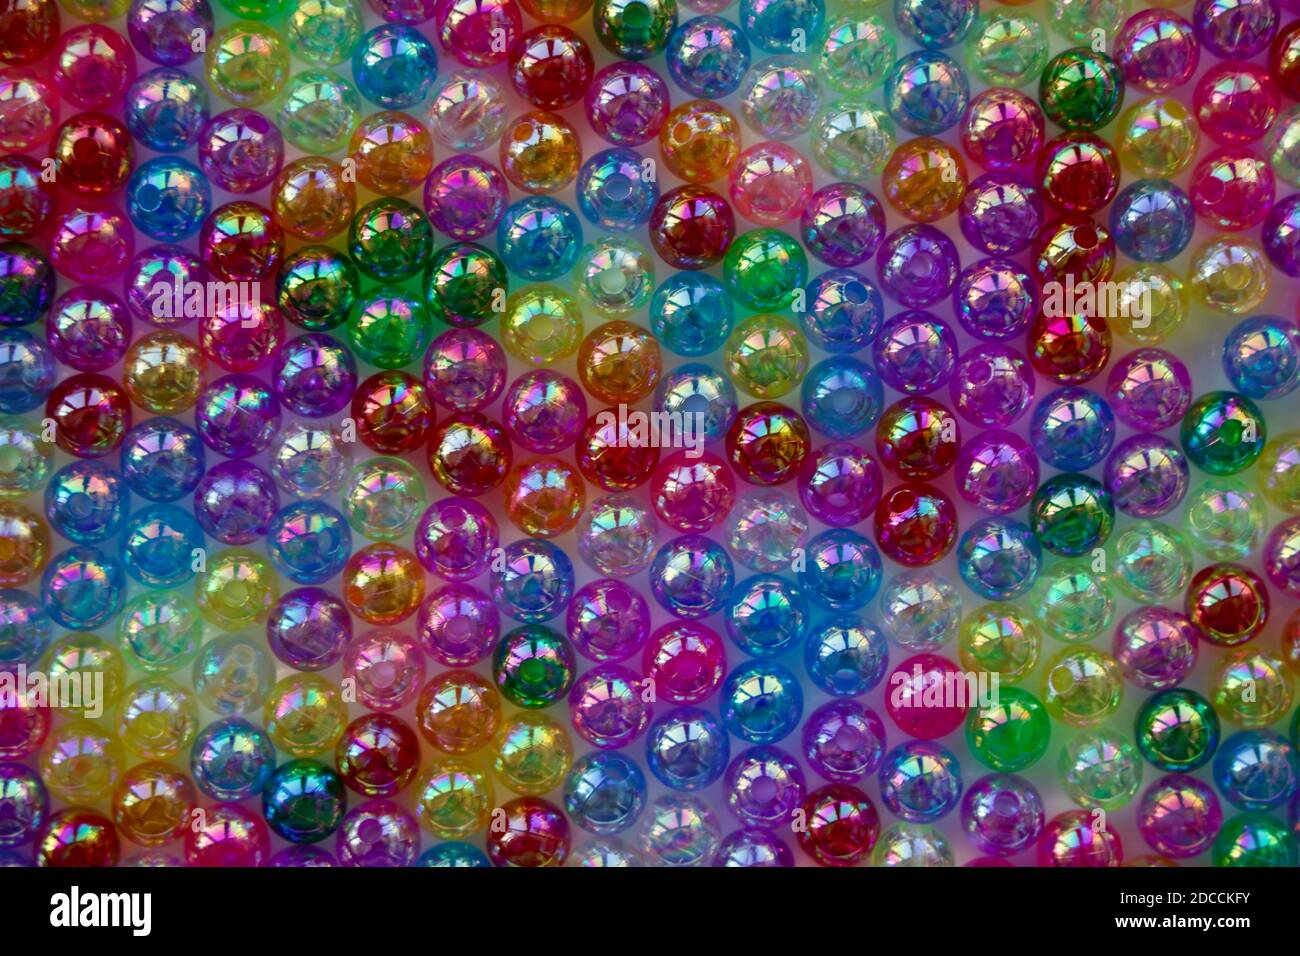 Conjunto de perlas transparentes, brillantes y de muchos colores que parecen burbujas de jabón. Cuentas de semillas para usar en collares y pulseras. Foto de stock